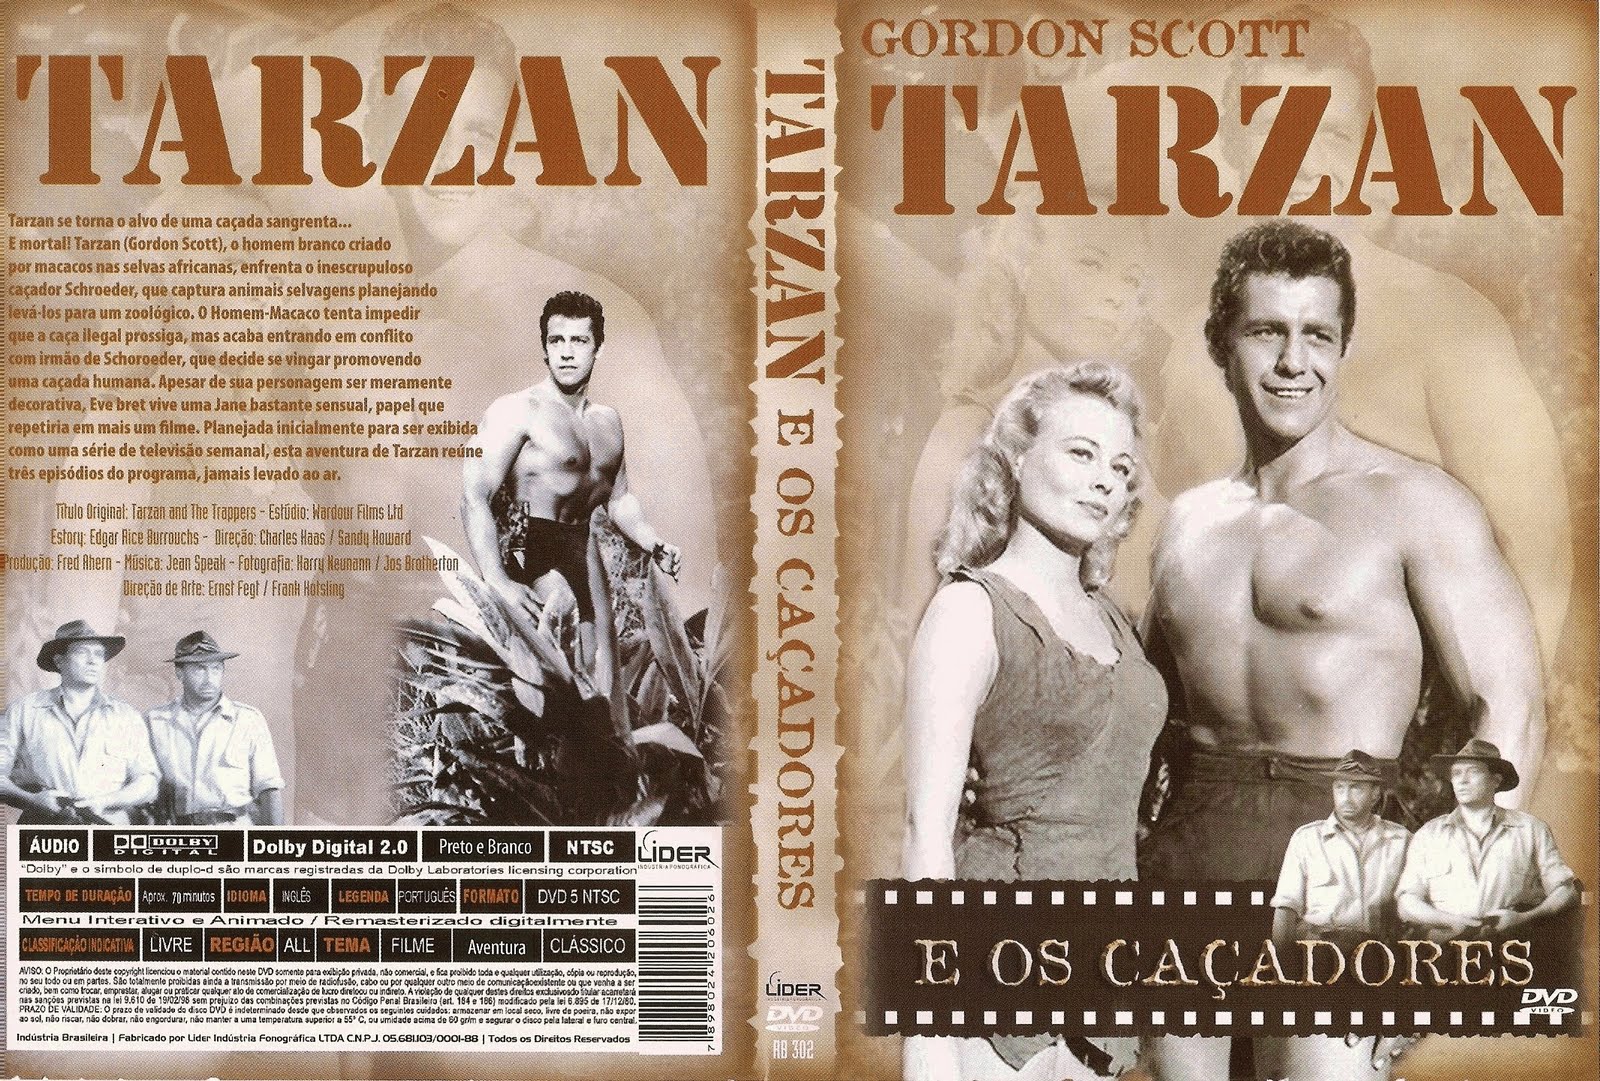 Tarzan E A Montanha Secreta [1949]